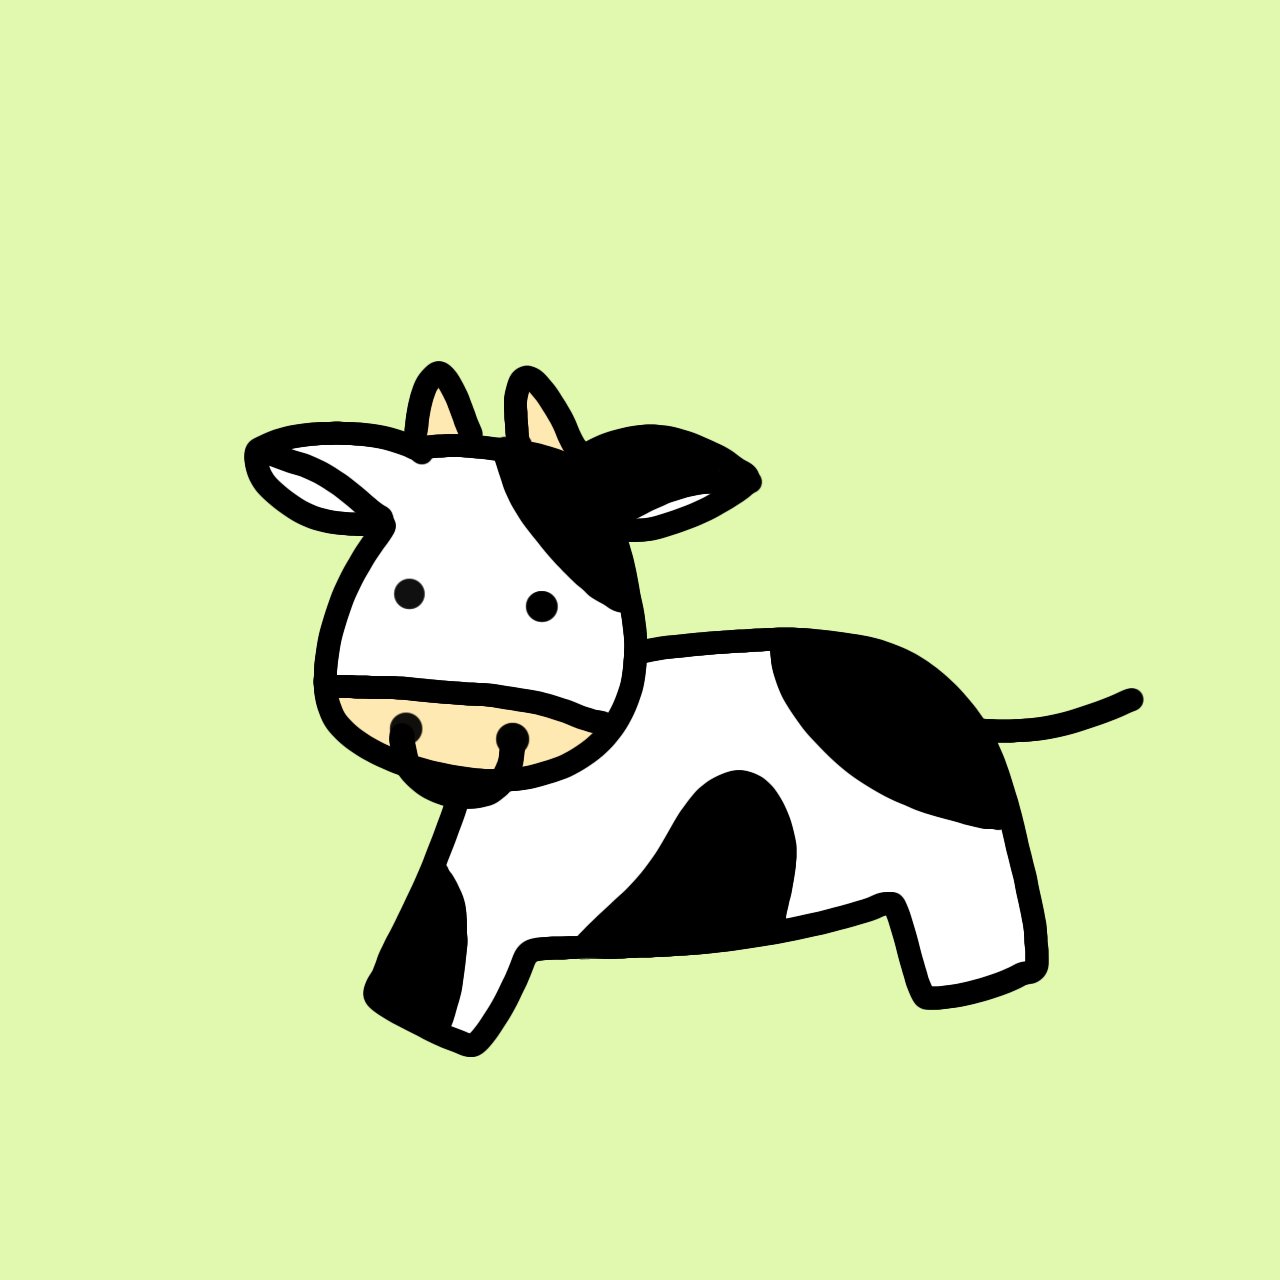 تويتر てんとう牛カンパニー 公式 على تويتر てんとう牛 じゃない いわゆる牛柄の牛さん Rakunooコンテスト 牛好き うし好き 牛イラスト うしイラスト ゆるかわいい ゆるい絵 T Co Zpc2wg9xtt